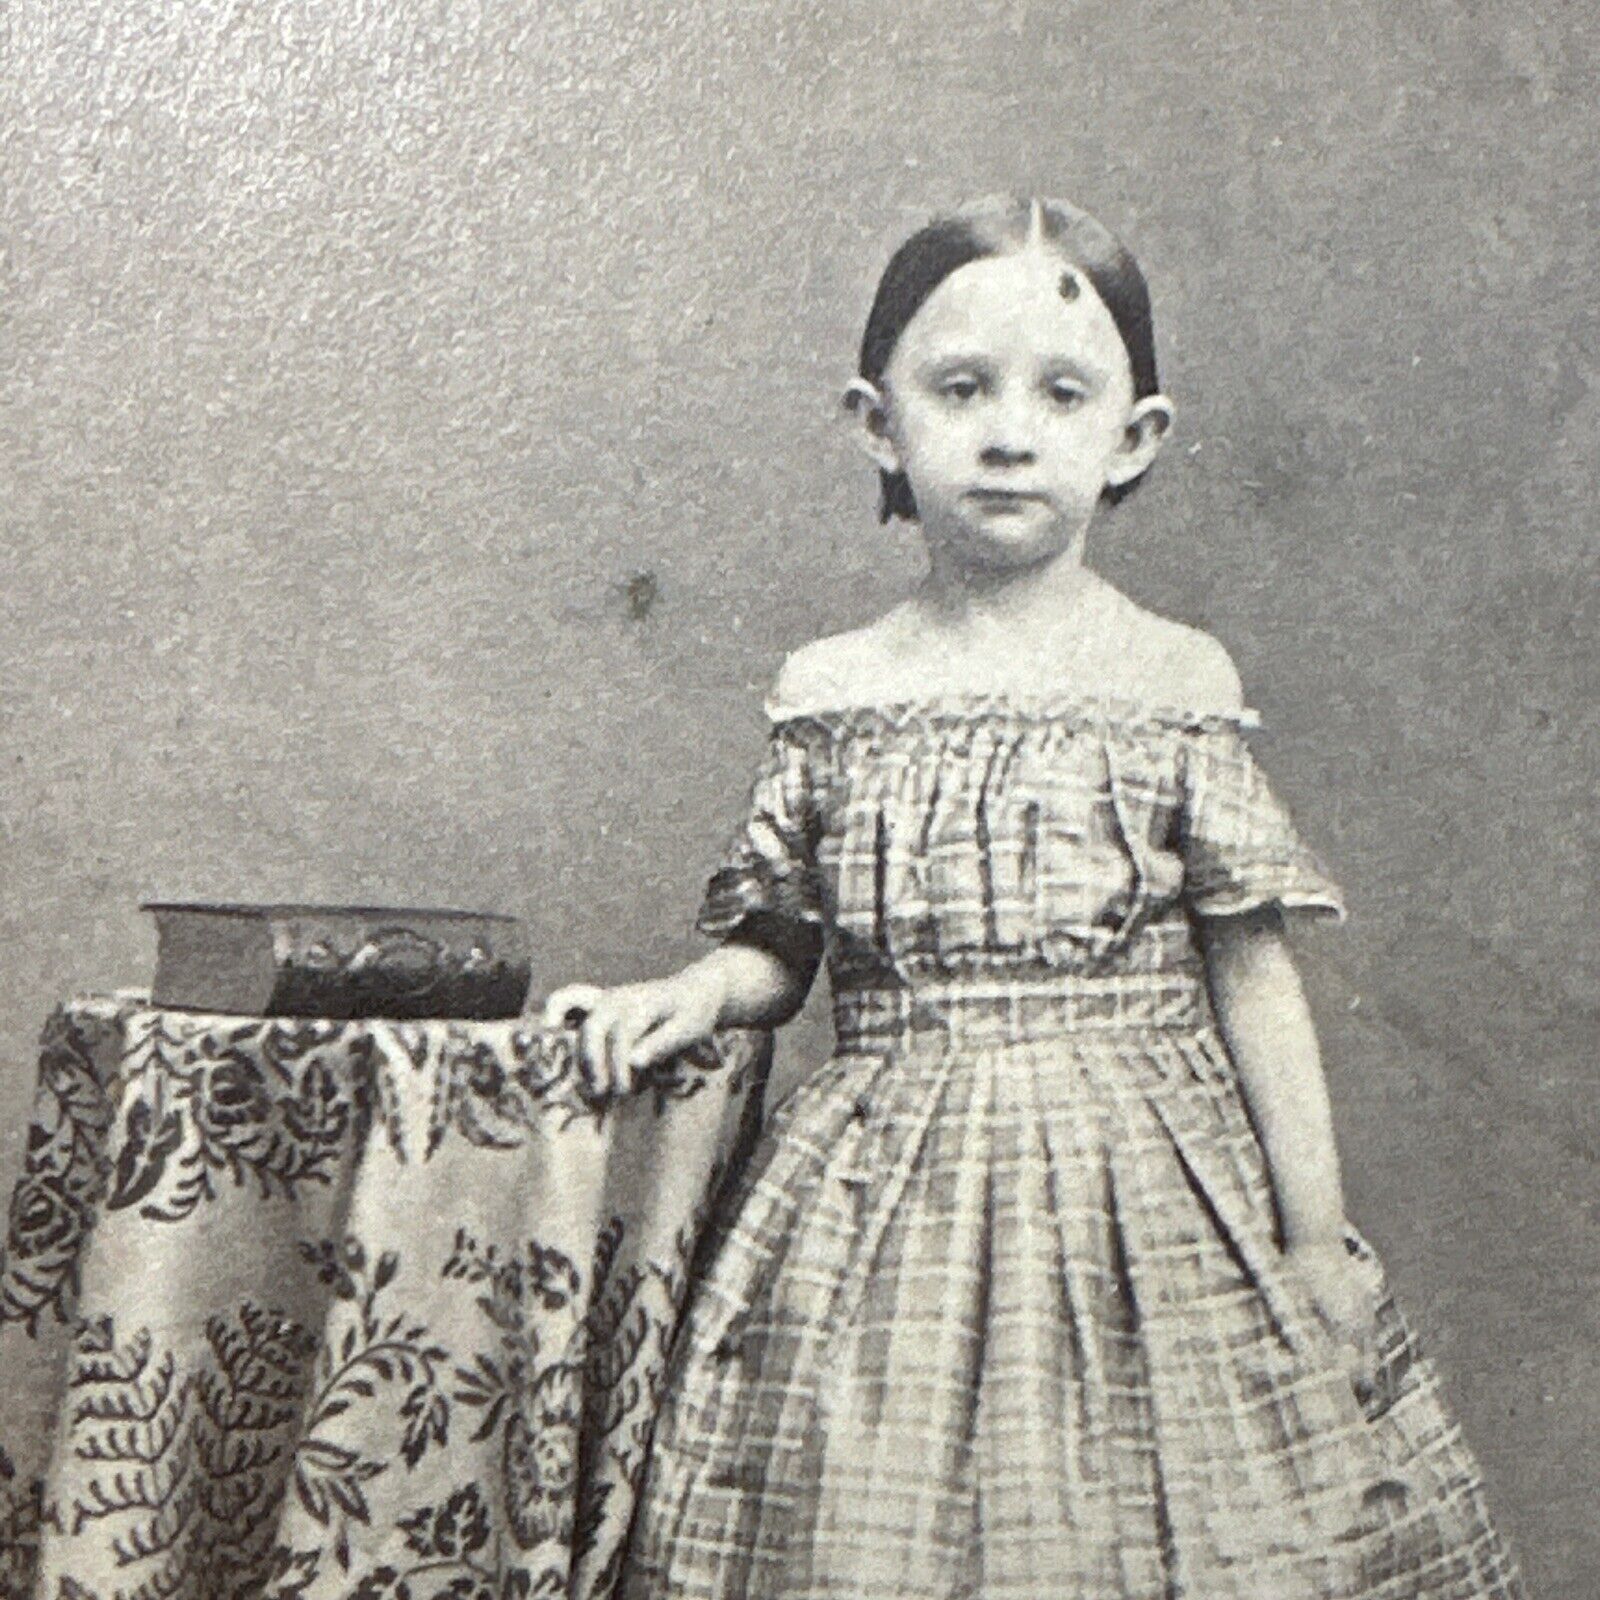 Creepy girl Bare Arms Antique Portrait CDV Photo Carte de Visite 1860 Providence